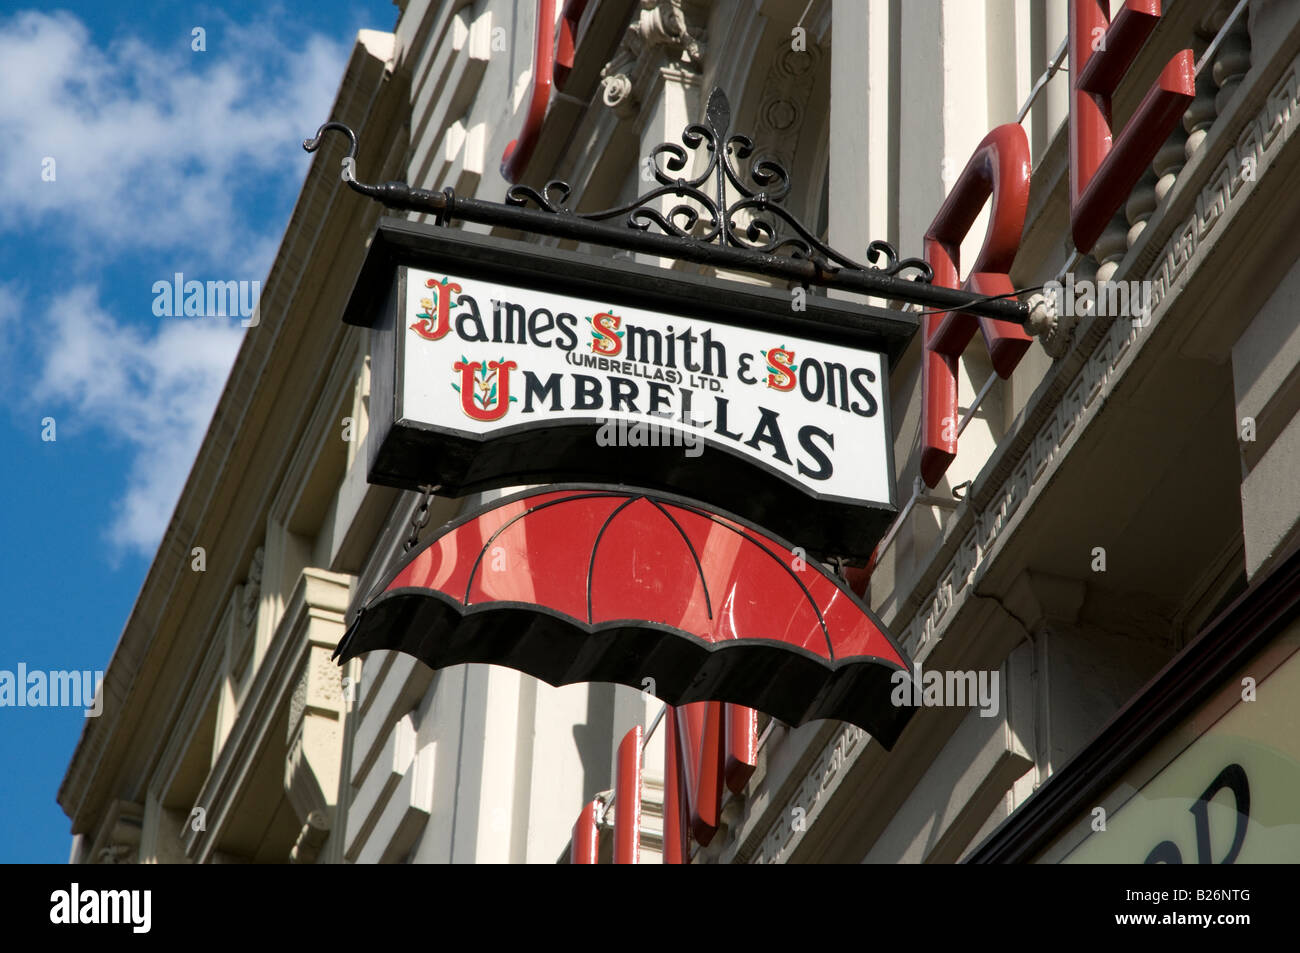 James Smith and Sons ombrelloni, Londra Inghilterra REGNO UNITO Foto Stock